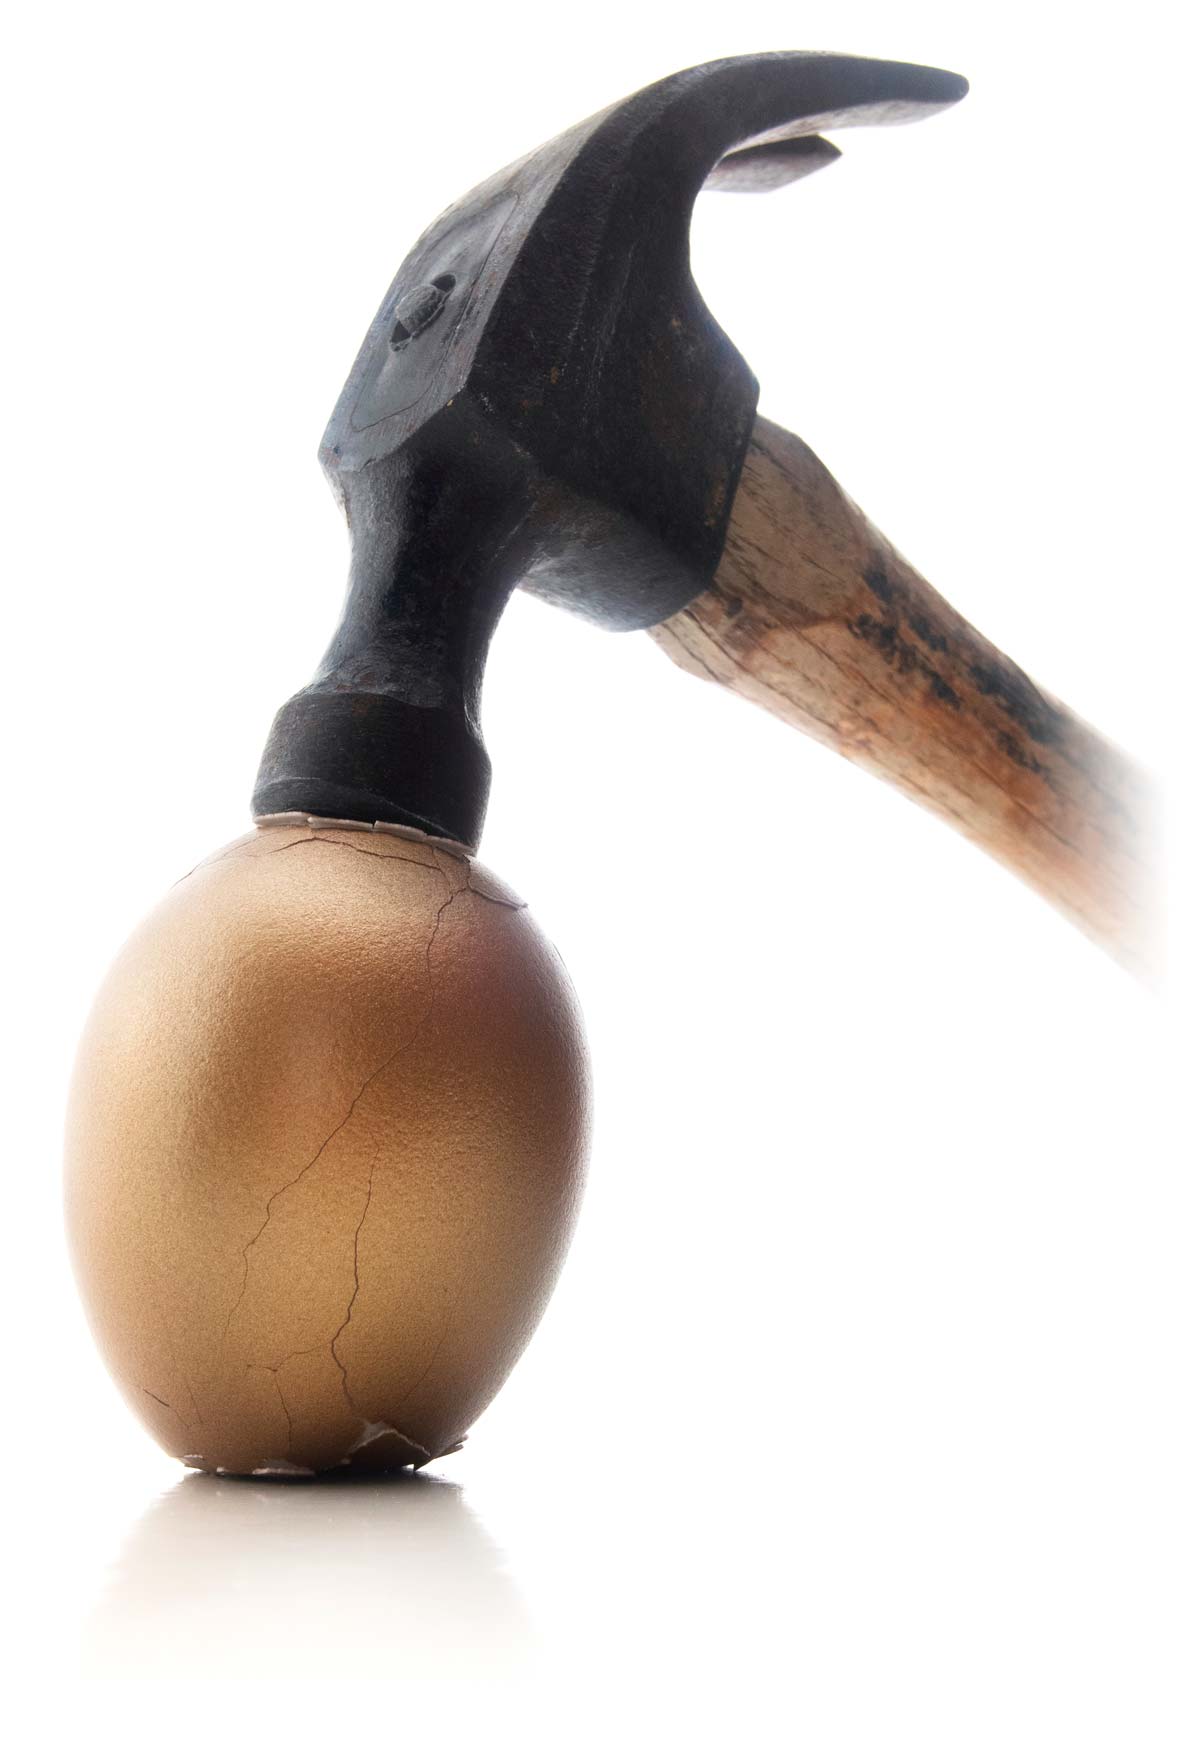 Hammer cracking golden nest egg